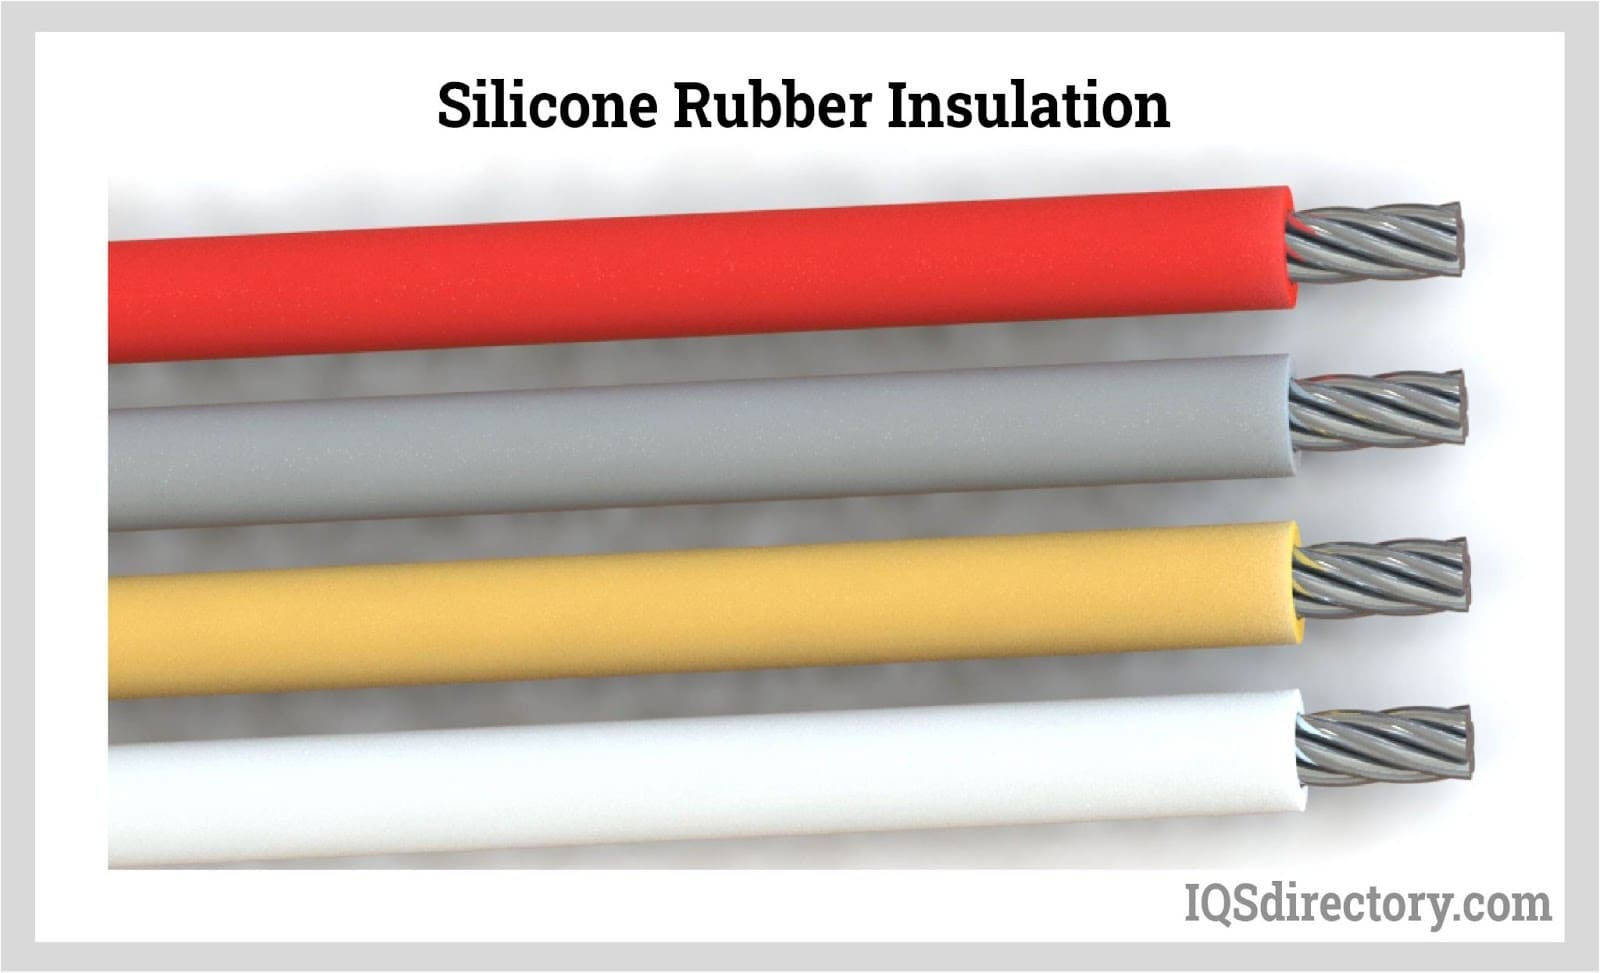 Silicone Rubber Insulation